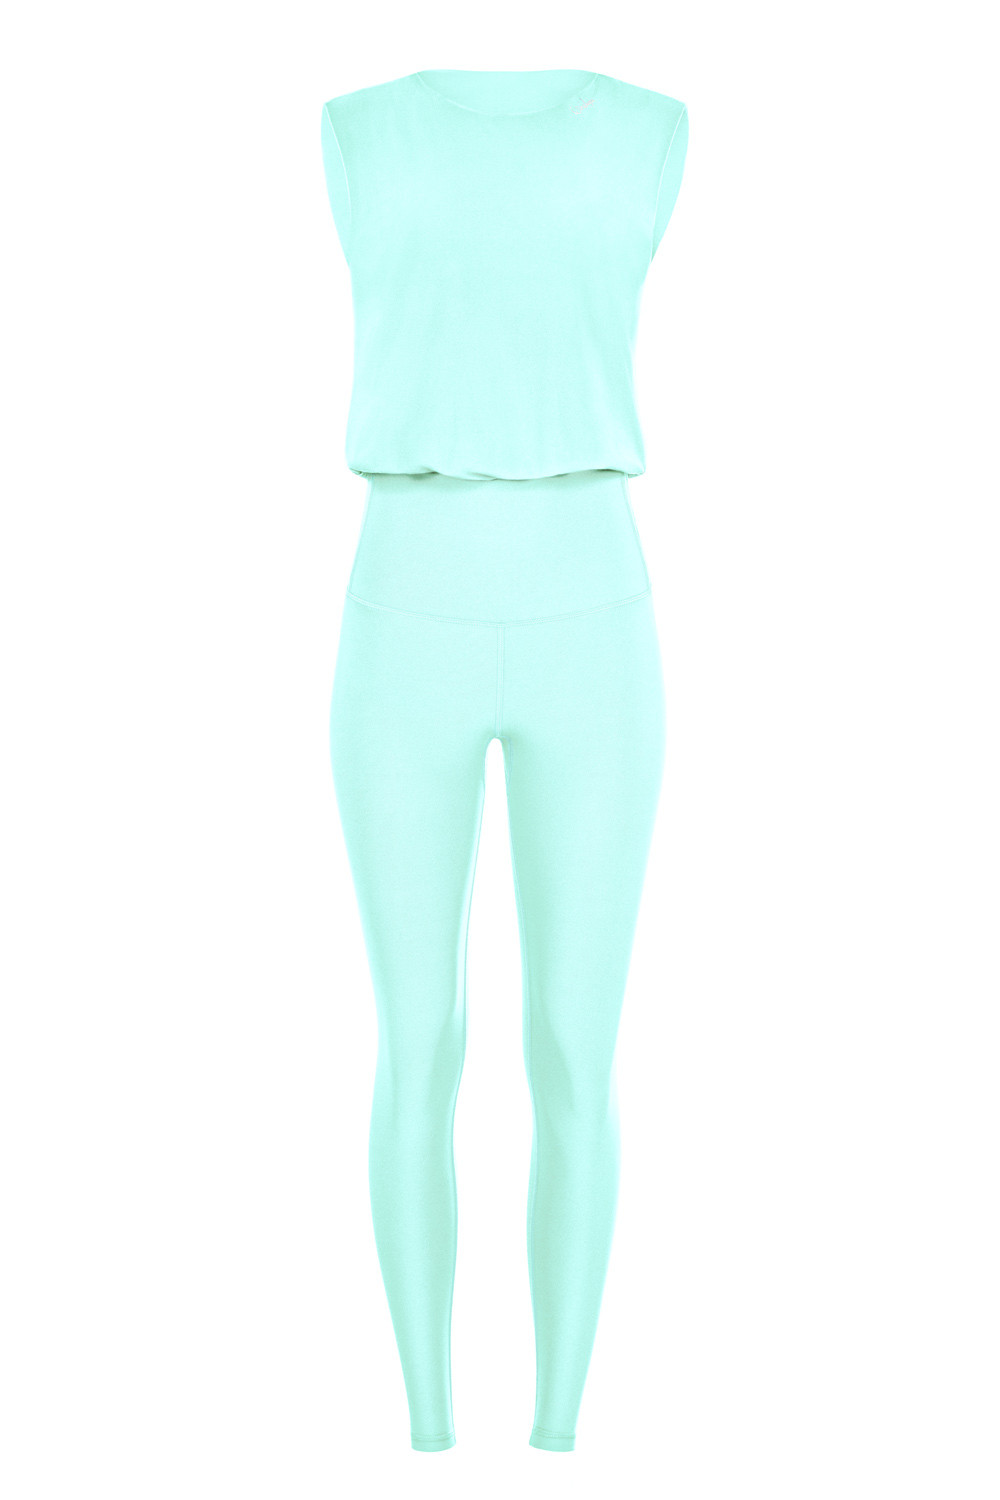 Functional Comfort Style delicate Jumpsuit mint, Comfort JS102LSC, Winshape